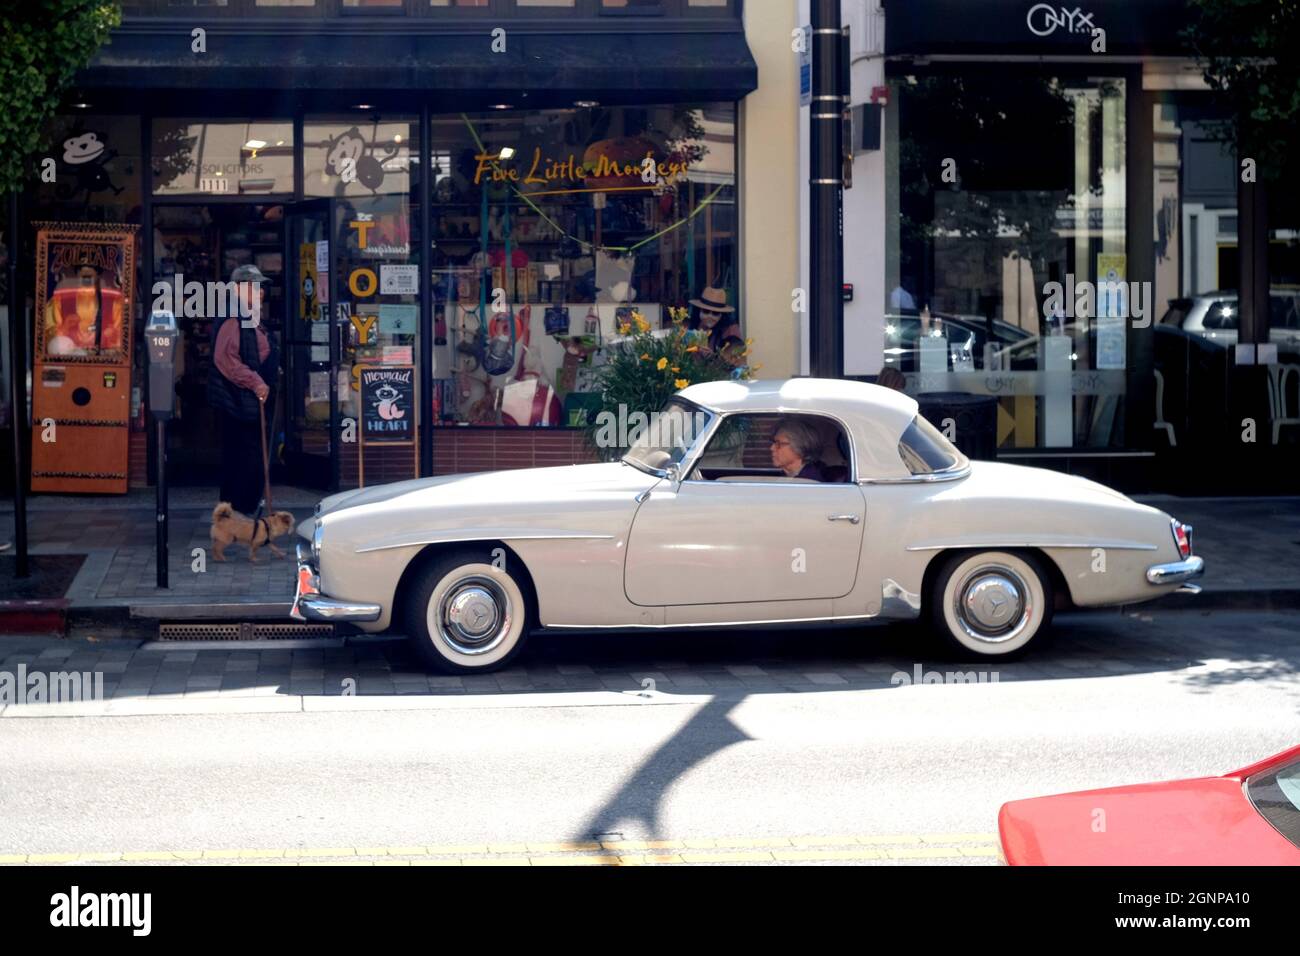 Burlingame, États-Unis. 26 septembre 2021. Un homme conduit une voiture d'époque dans une rue à Burlingame, Californie, États-Unis, le 26 septembre 2021. Crédit : Wu Xiaoling/Xinhua/Alay Live News Banque D'Images